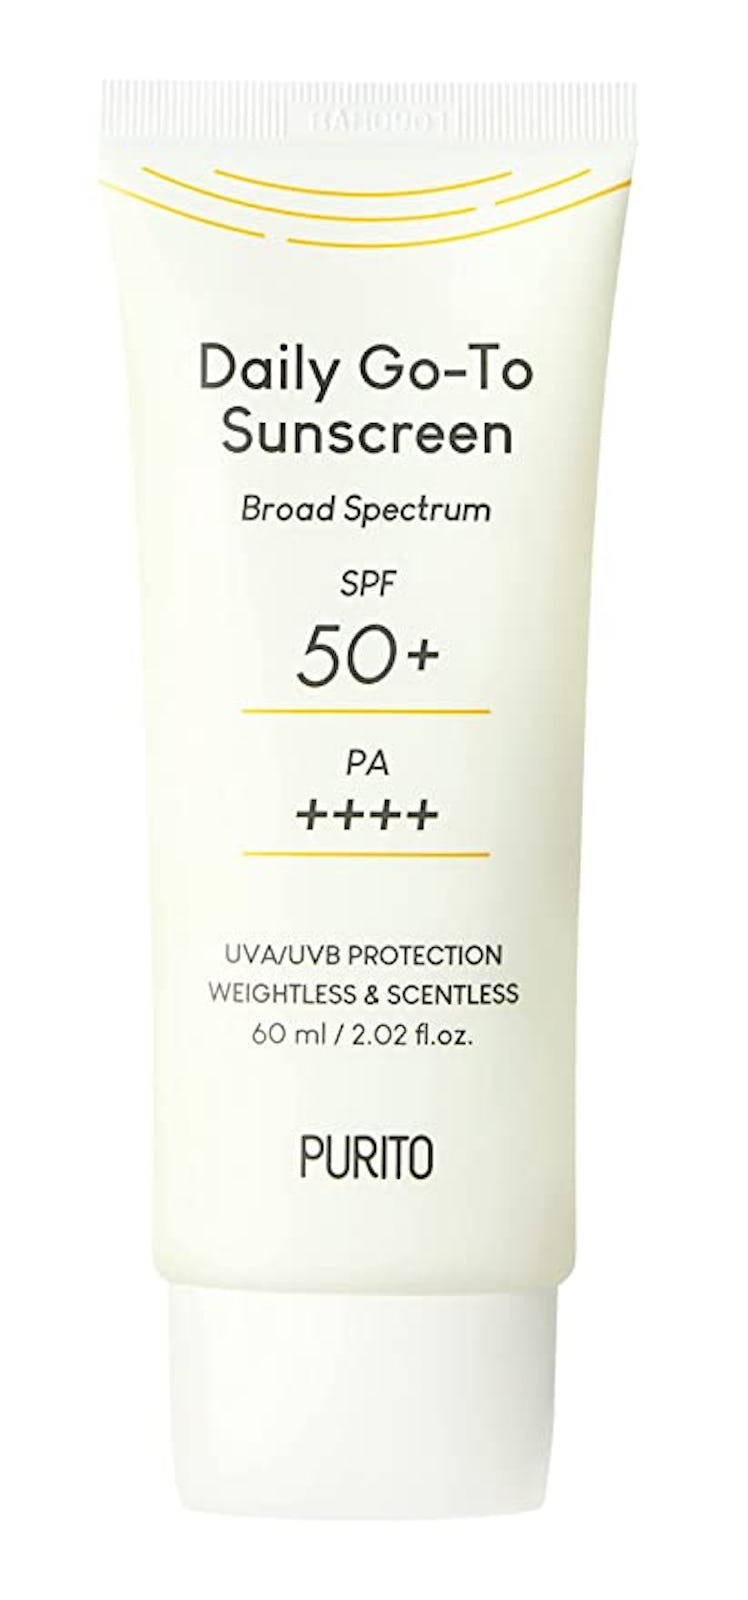 PURITO Daily Go-To Sunscreen SPF 50+ SPF